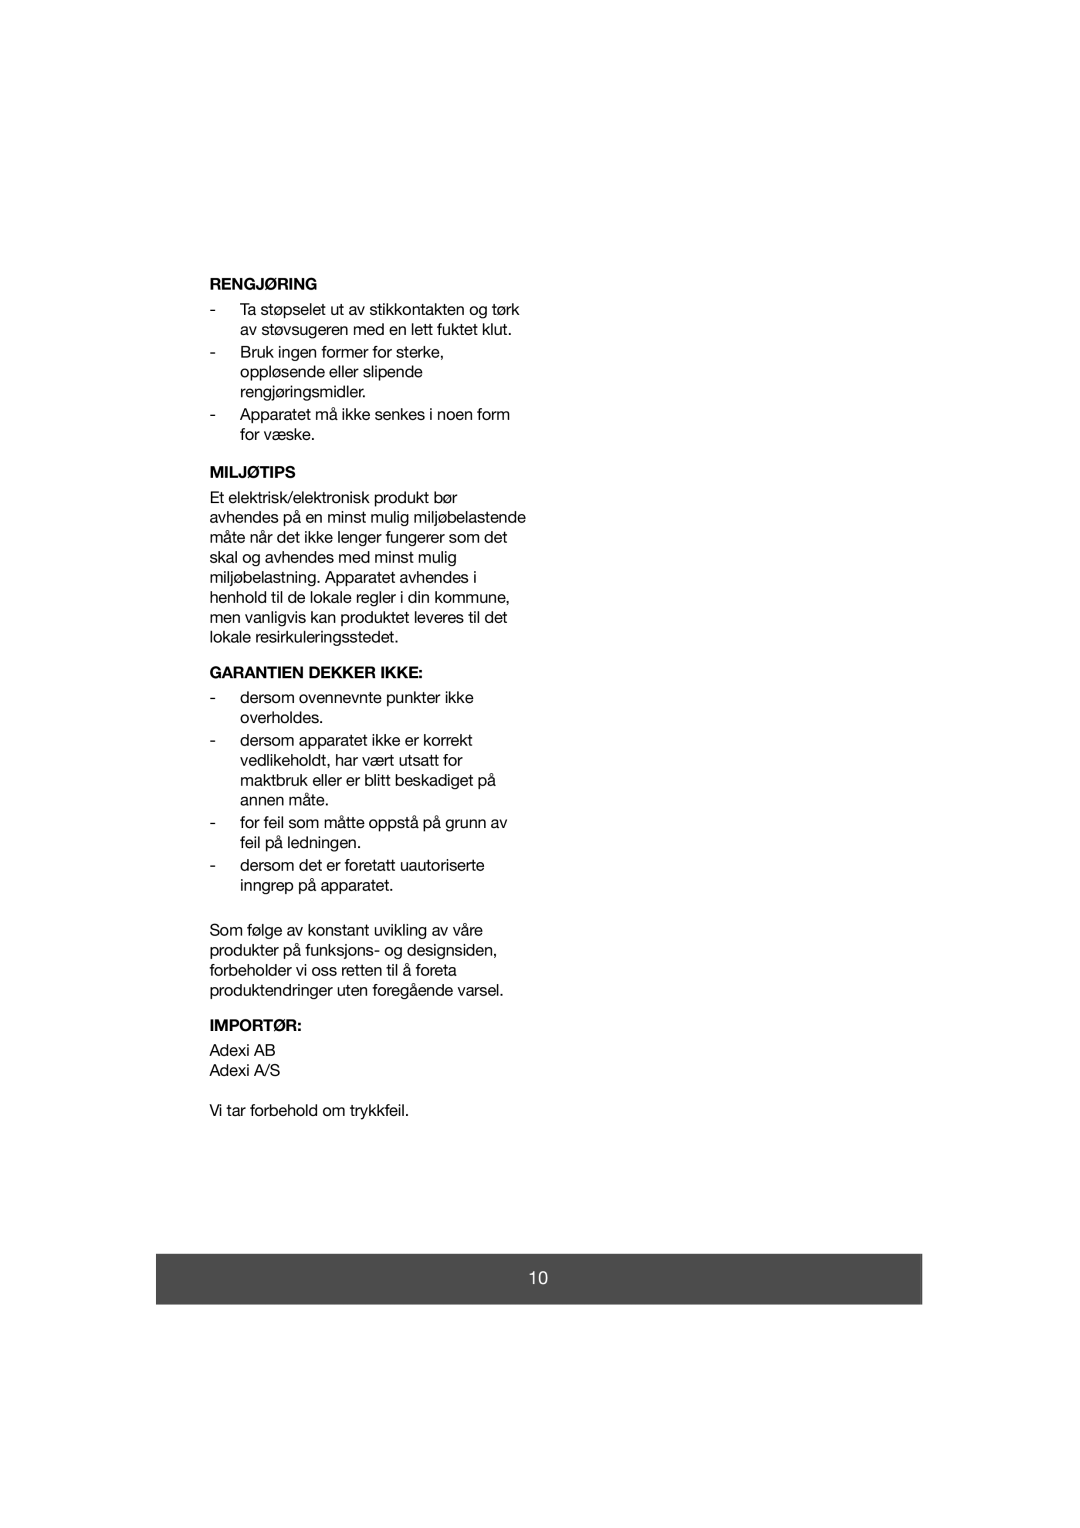 Melissa 640-038 manual Rengjøring, Miljøtips, Garantien Dekker Ikke, Importør 